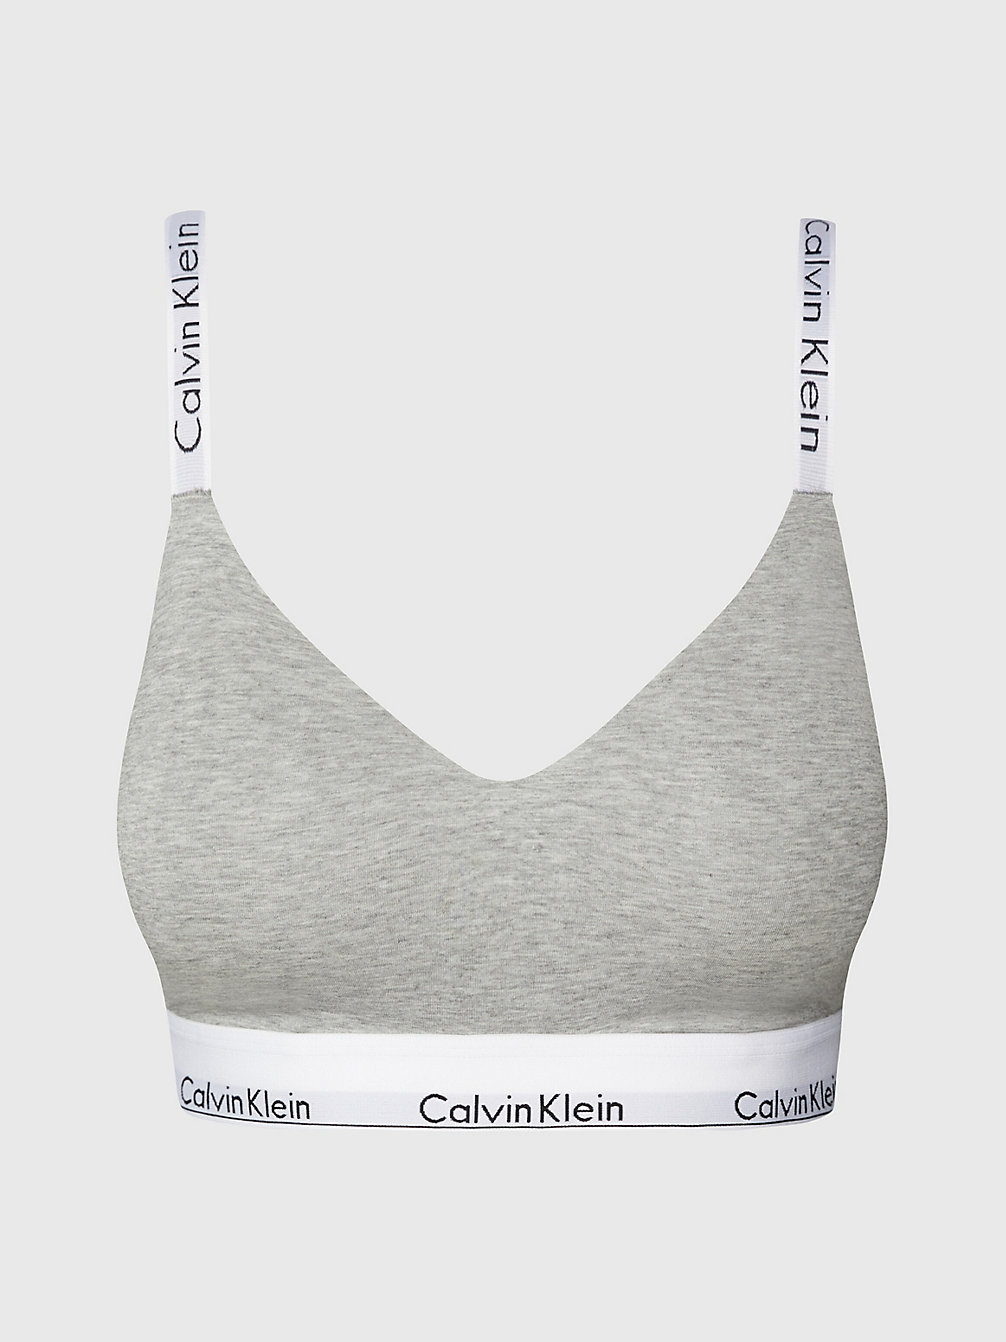 GREY HEATHER Full Cup Bralette - Modern Cotton undefined Damen Calvin Klein